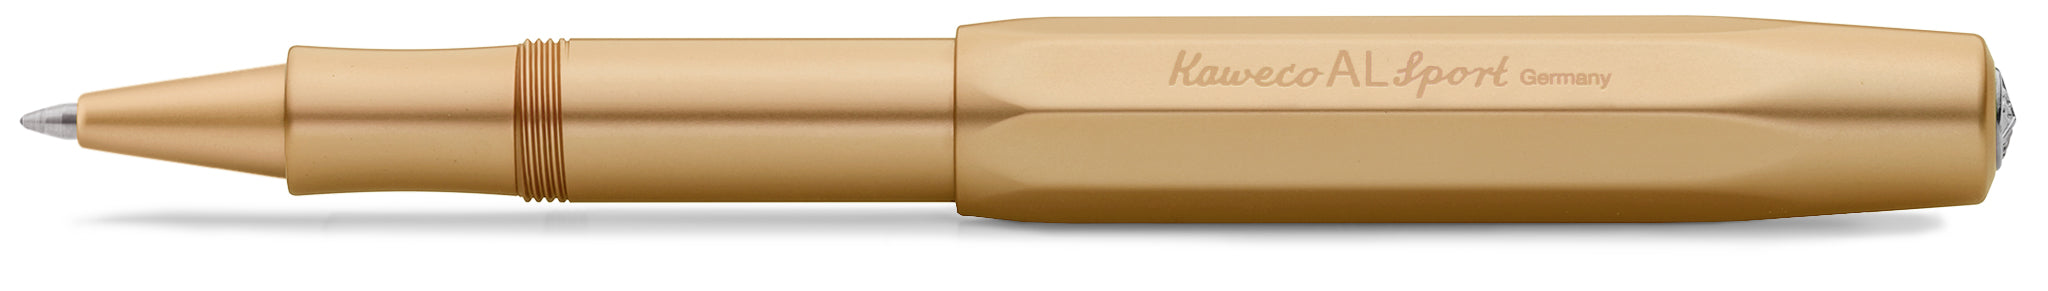 KAWECO AL Sport Special Edition GOLD Gel Roller Pen